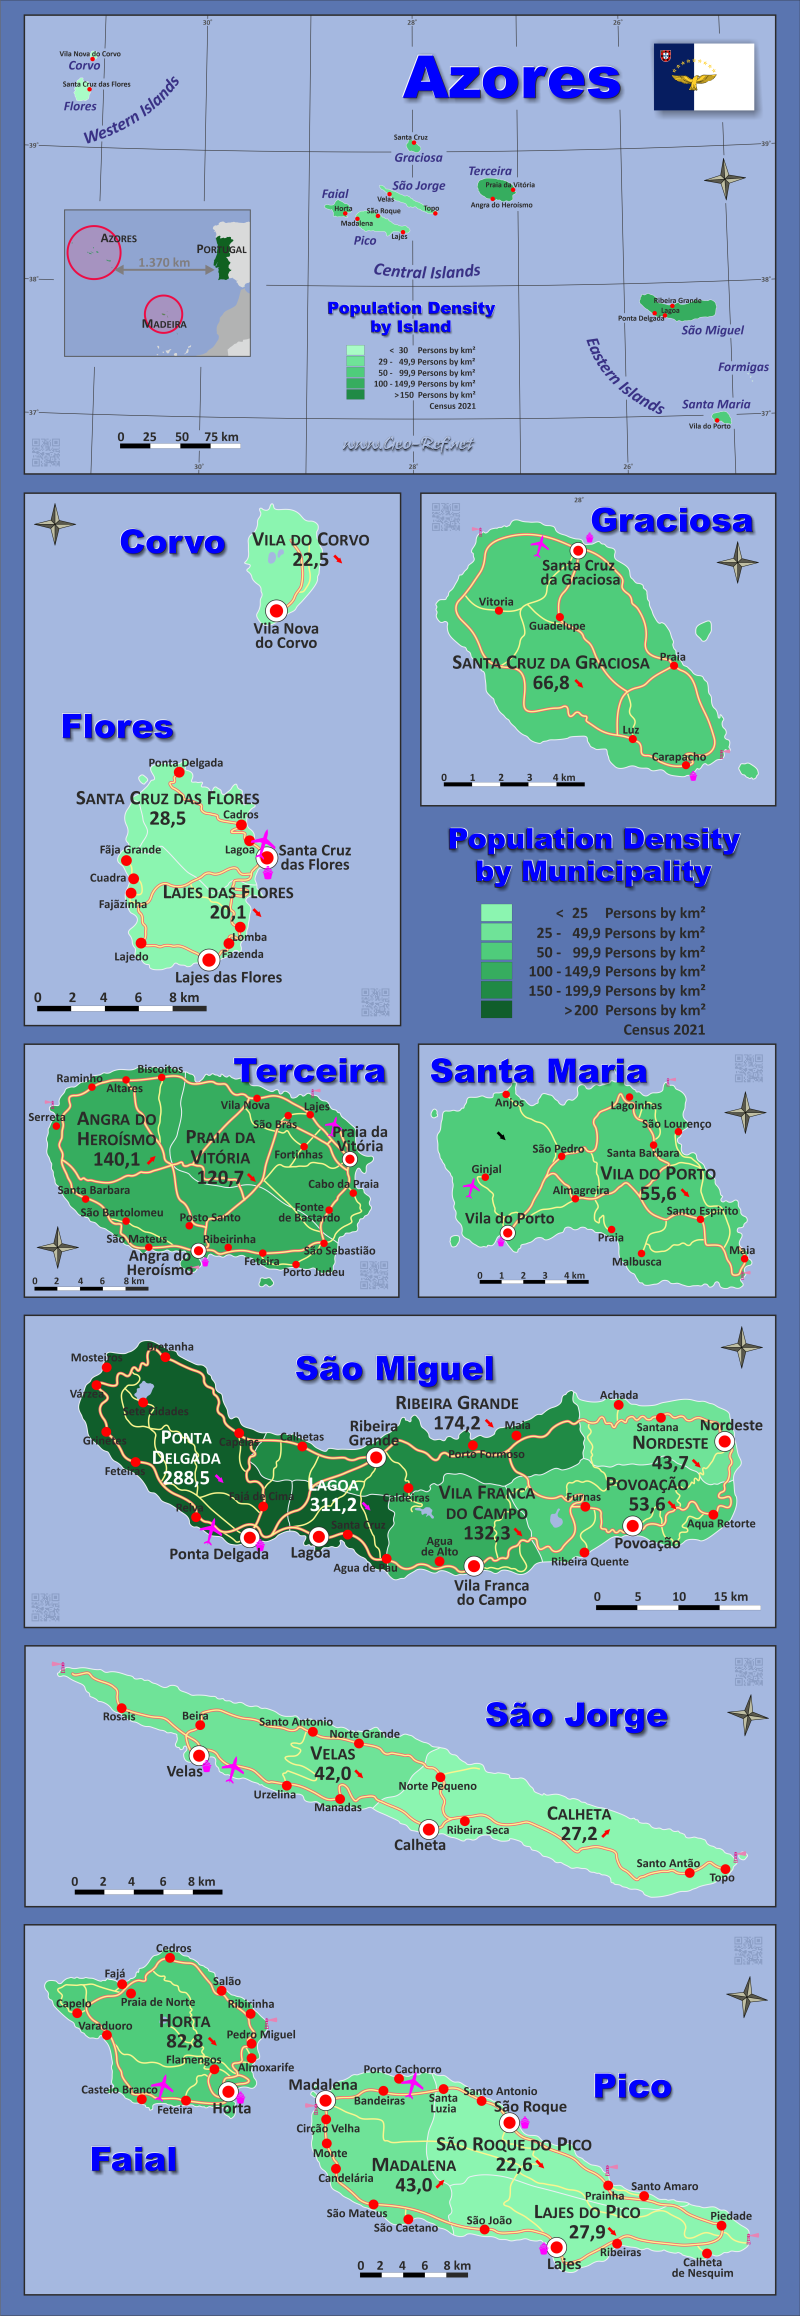 Mapa Azores División administrativa - Densidad de población 2021